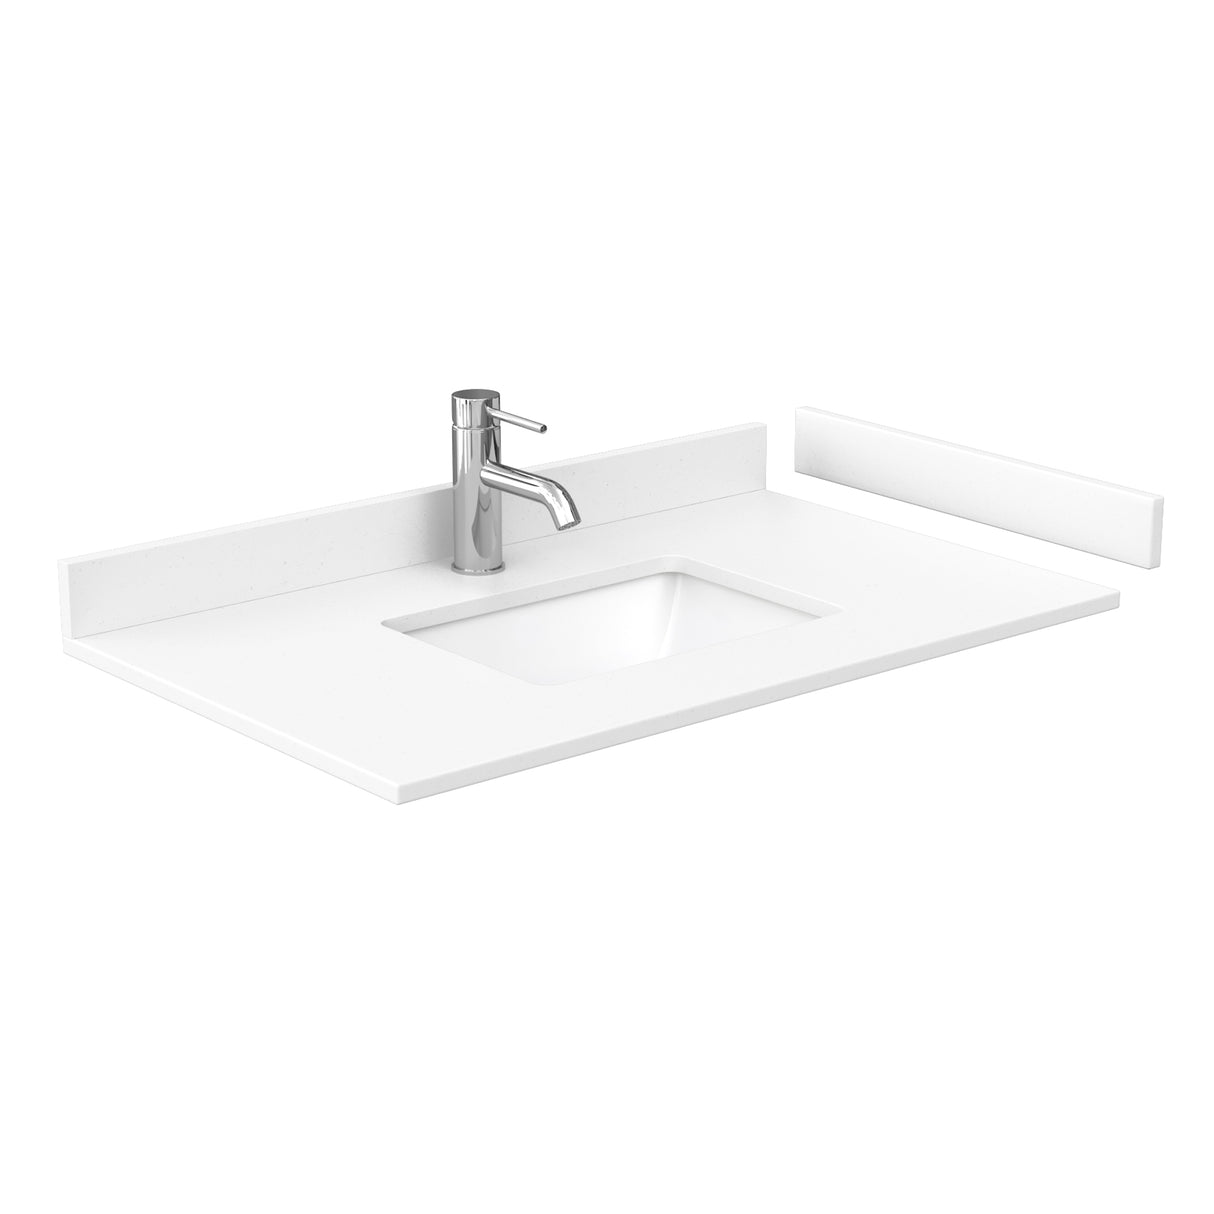 Deborah 36 Inch Single Bathroom Vanity in Dark Gray White Cultured Marble Countertop Undermount Square Sink Medicine Cabinet